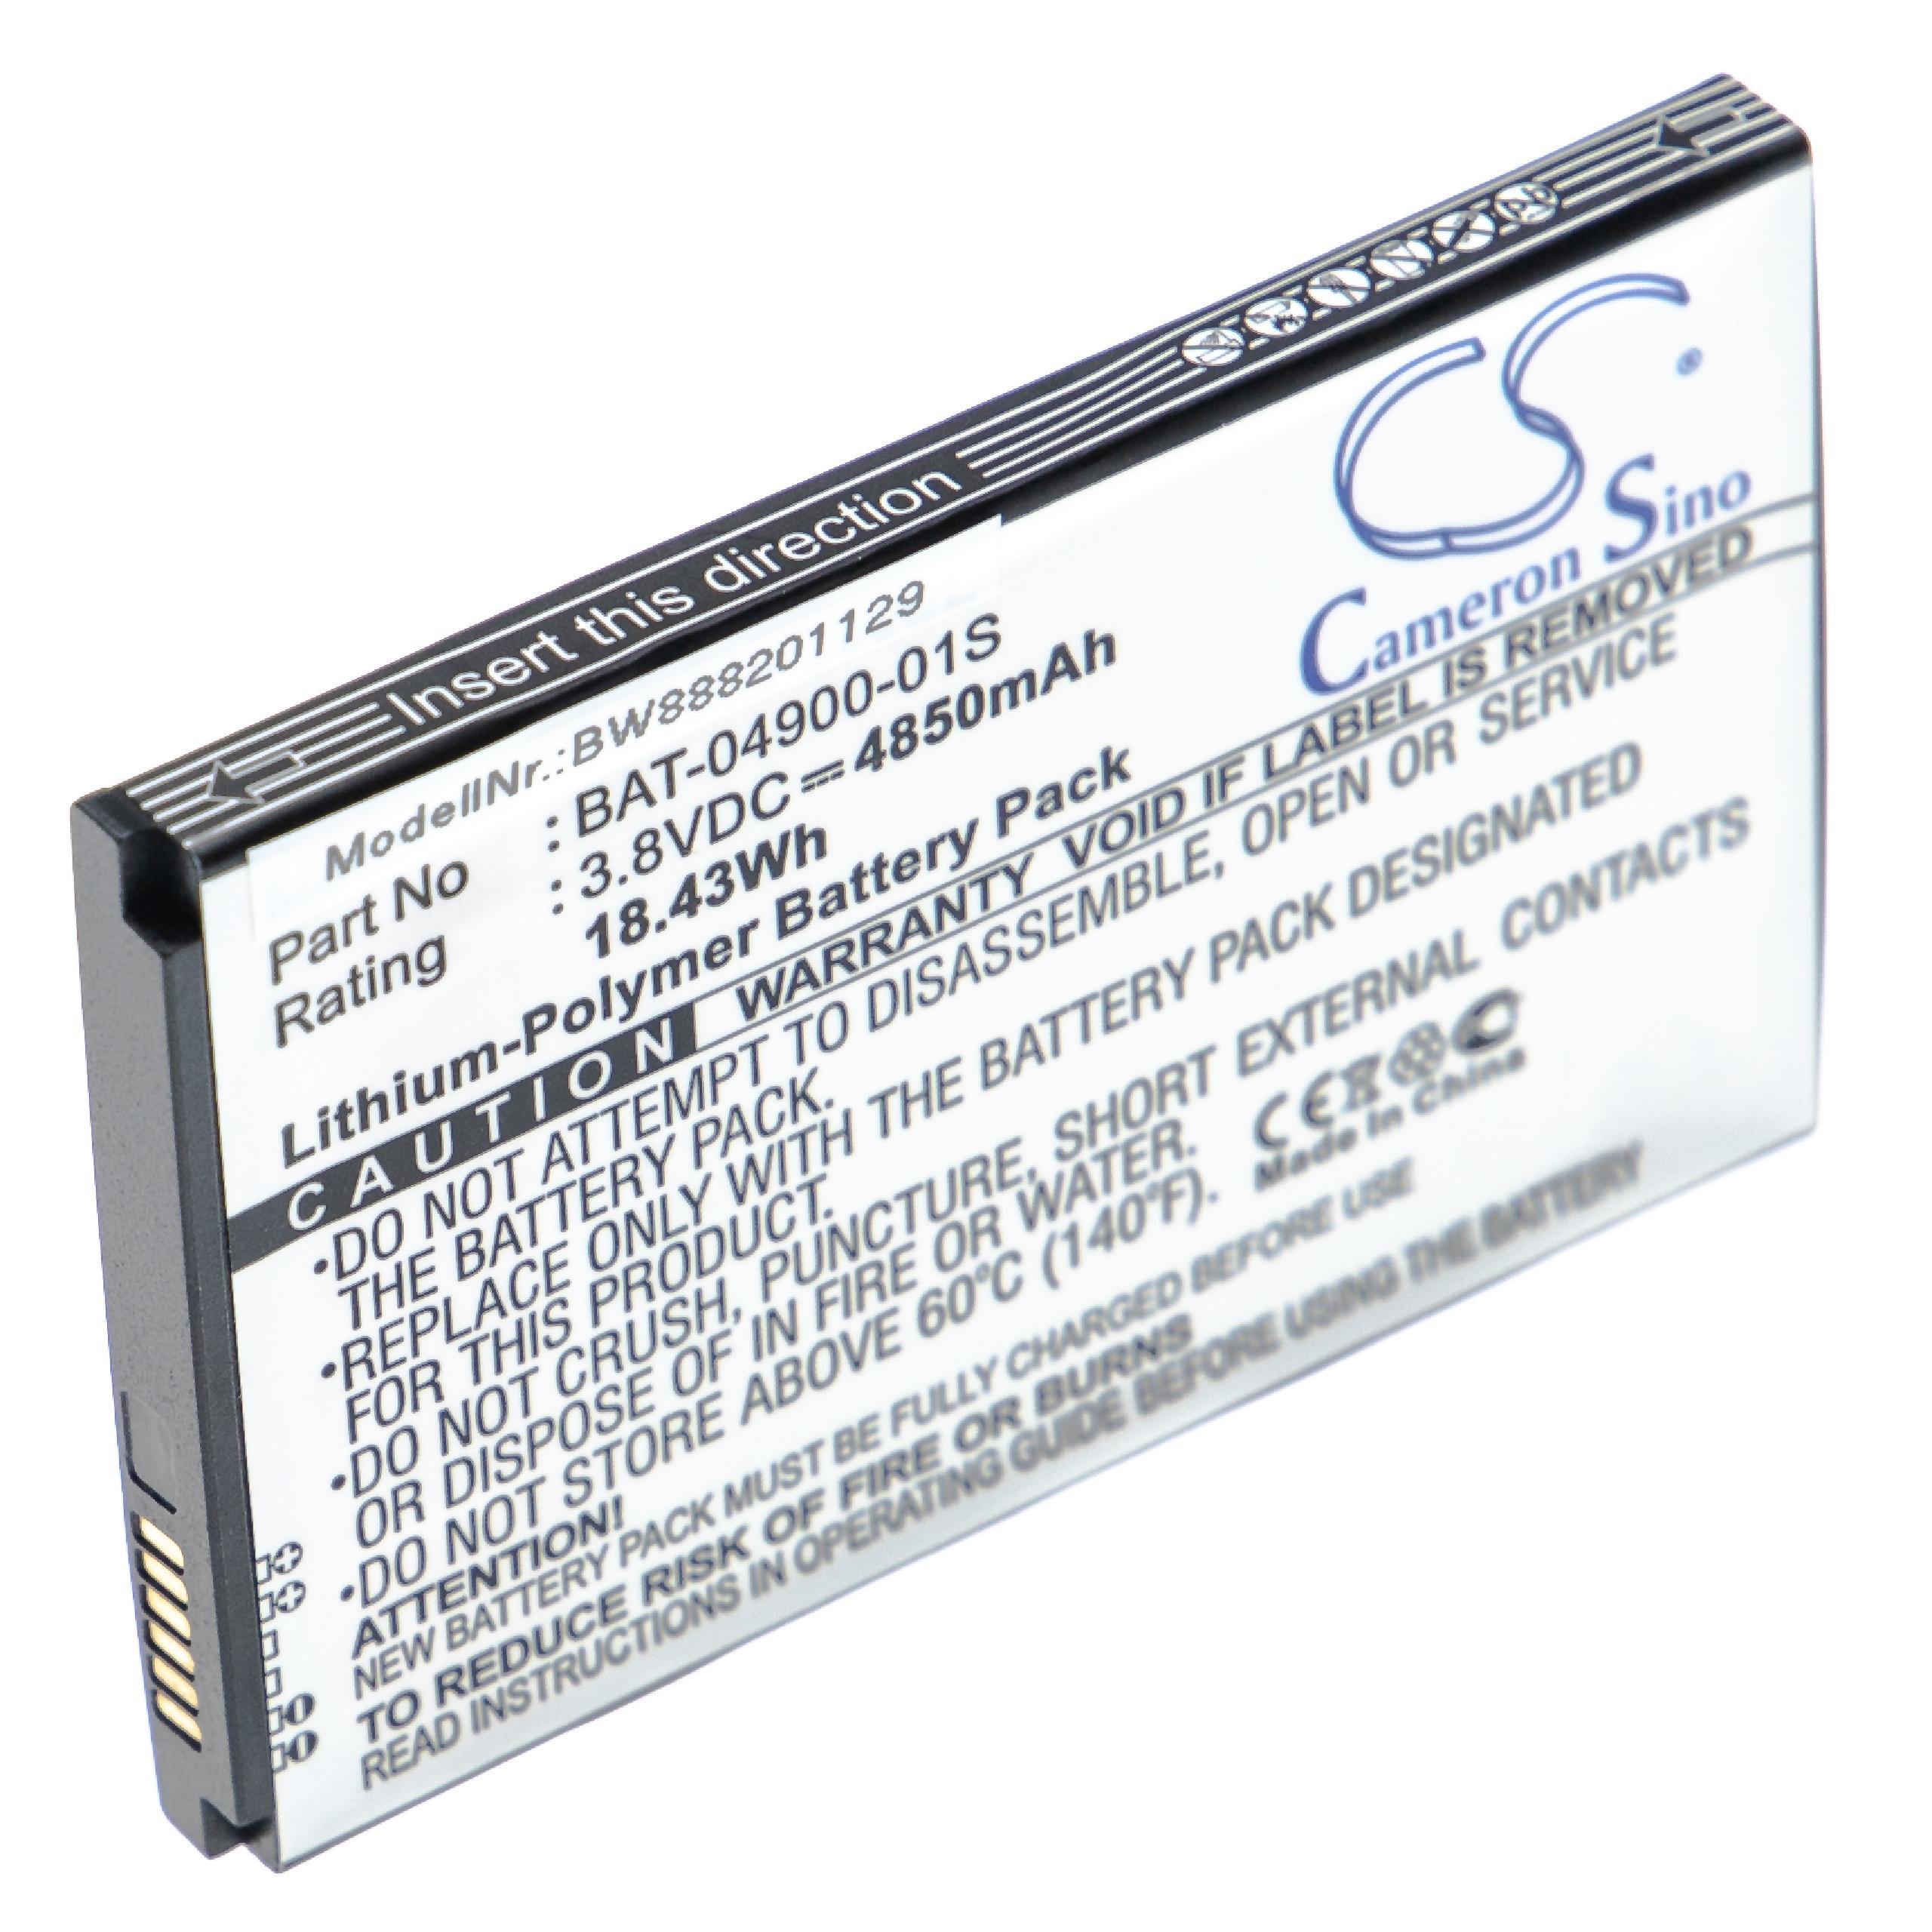 Batterie remplace Sonim BAT-04900-01S pour téléphone portable - 4850mAh, 3,8V, Li-polymère